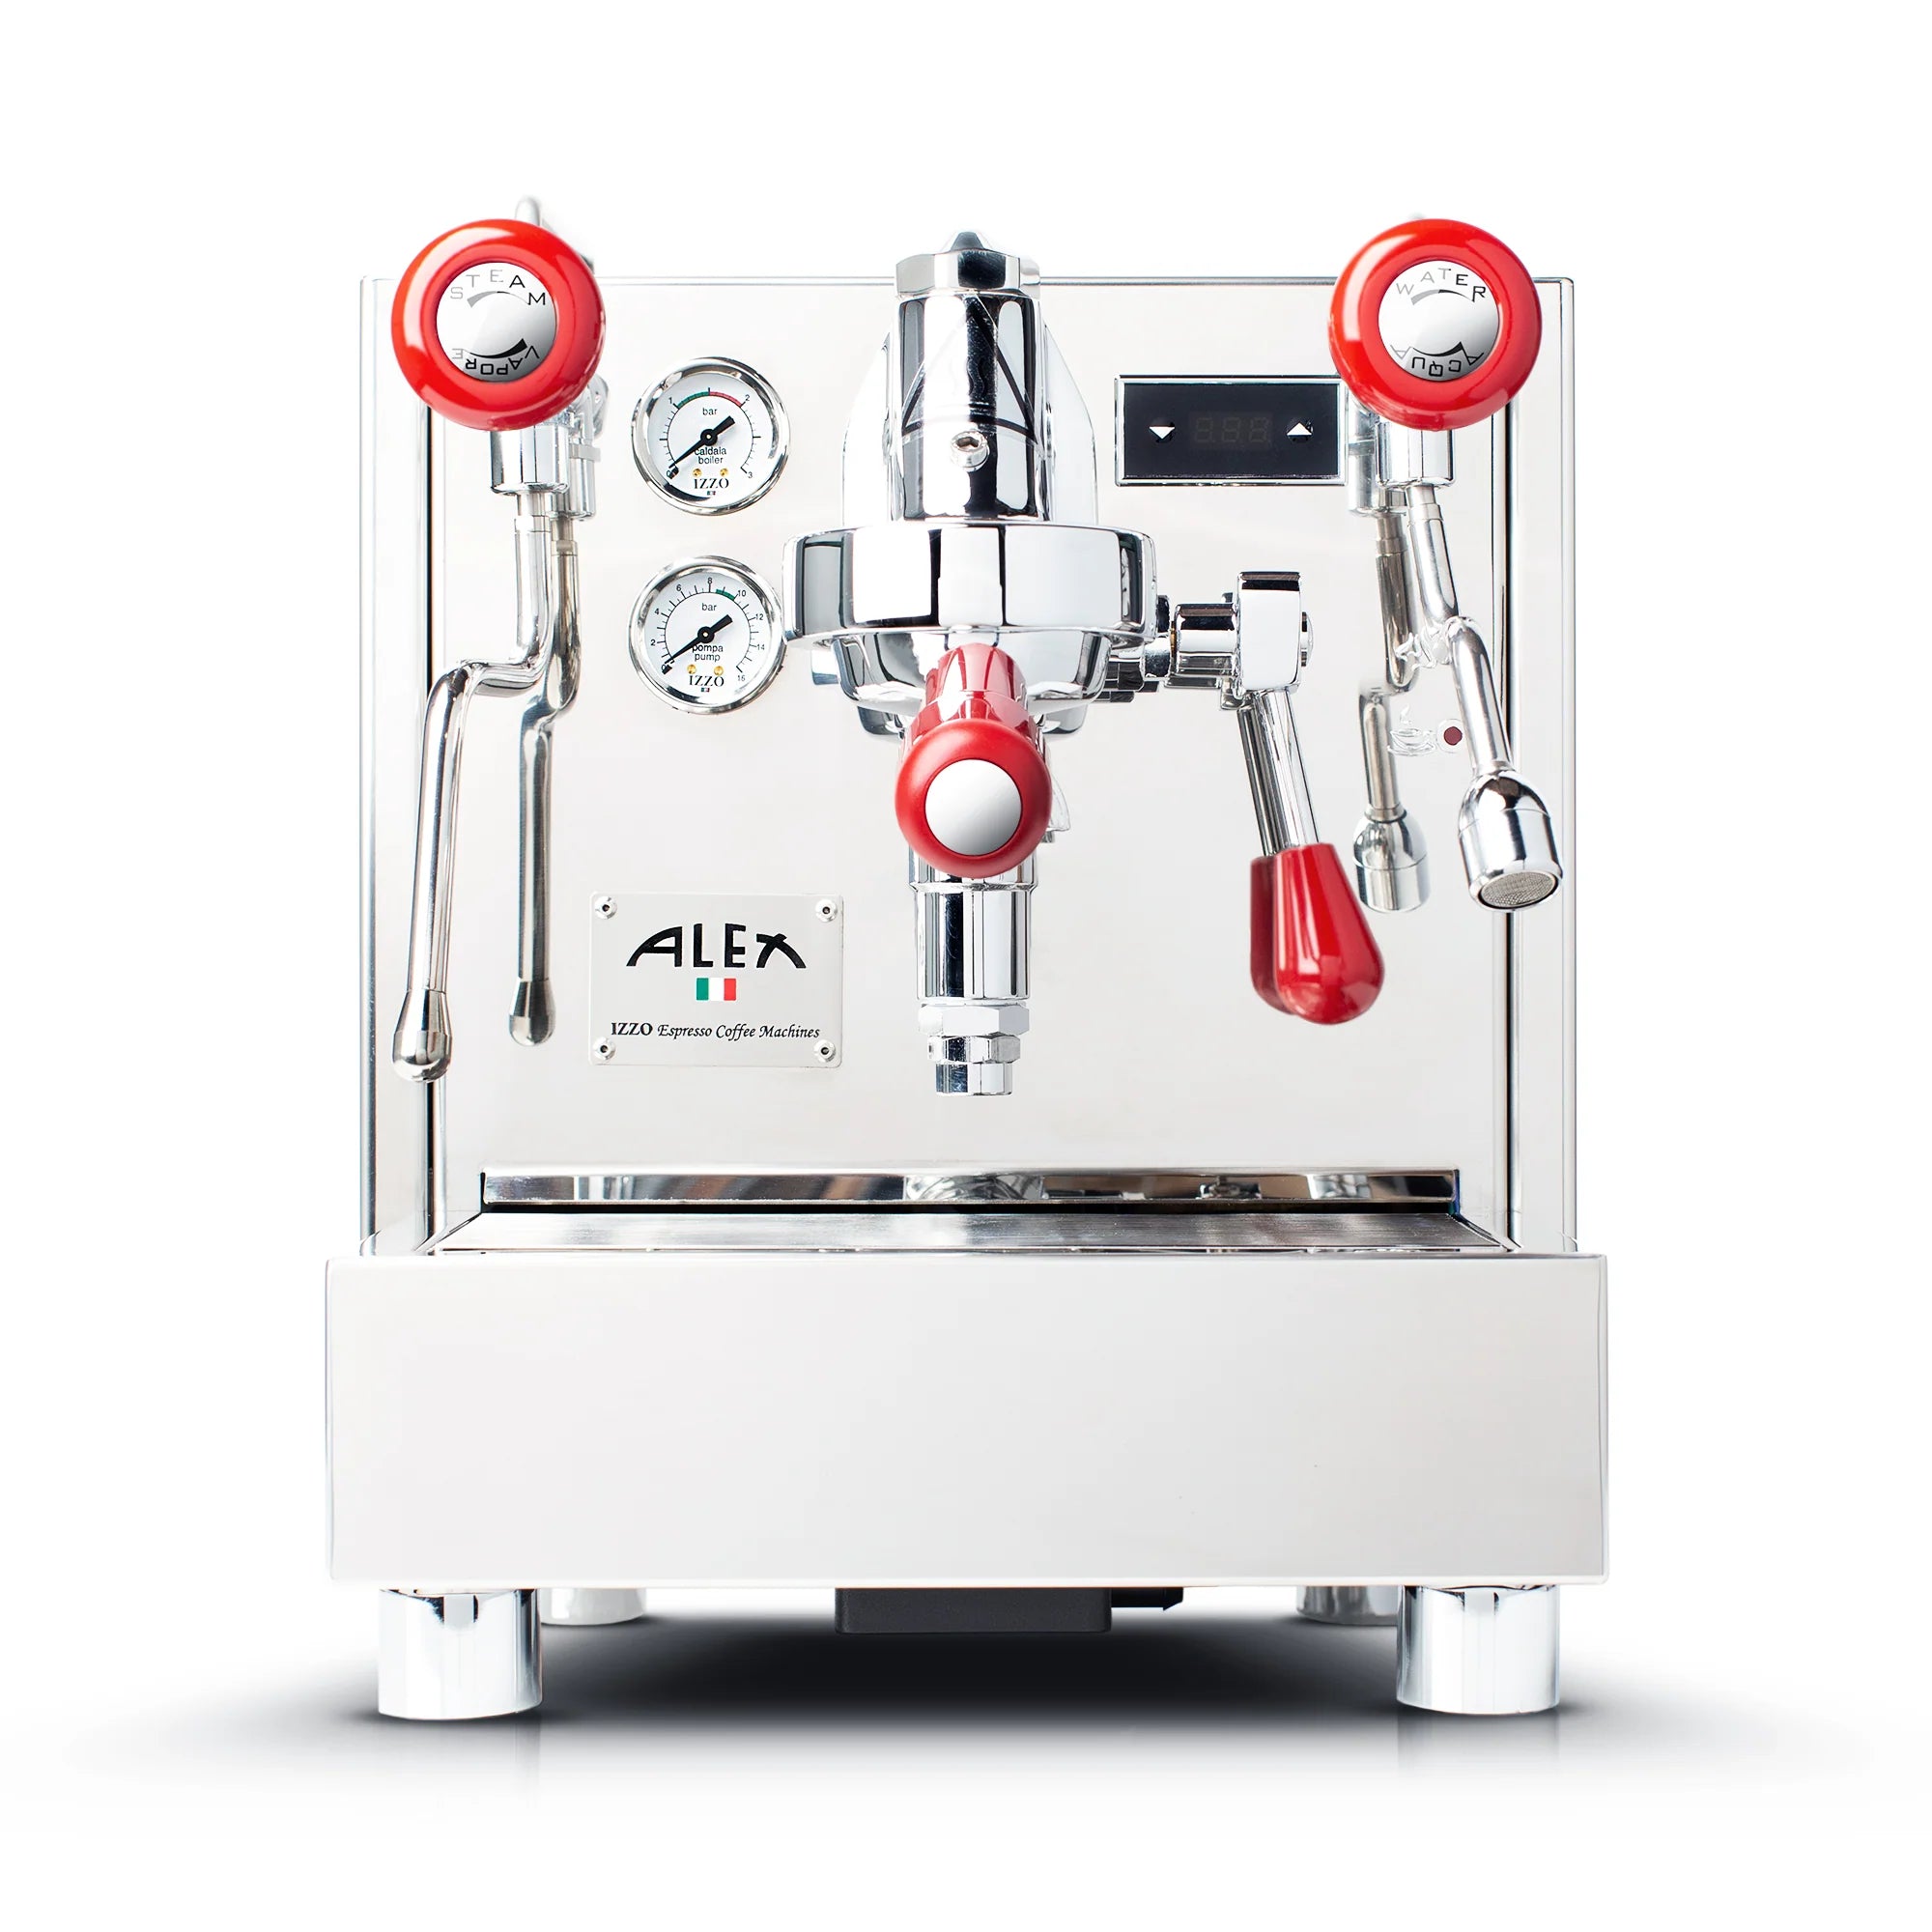 Izzo Alex Duetto IV Professional Espresso Machine for Home